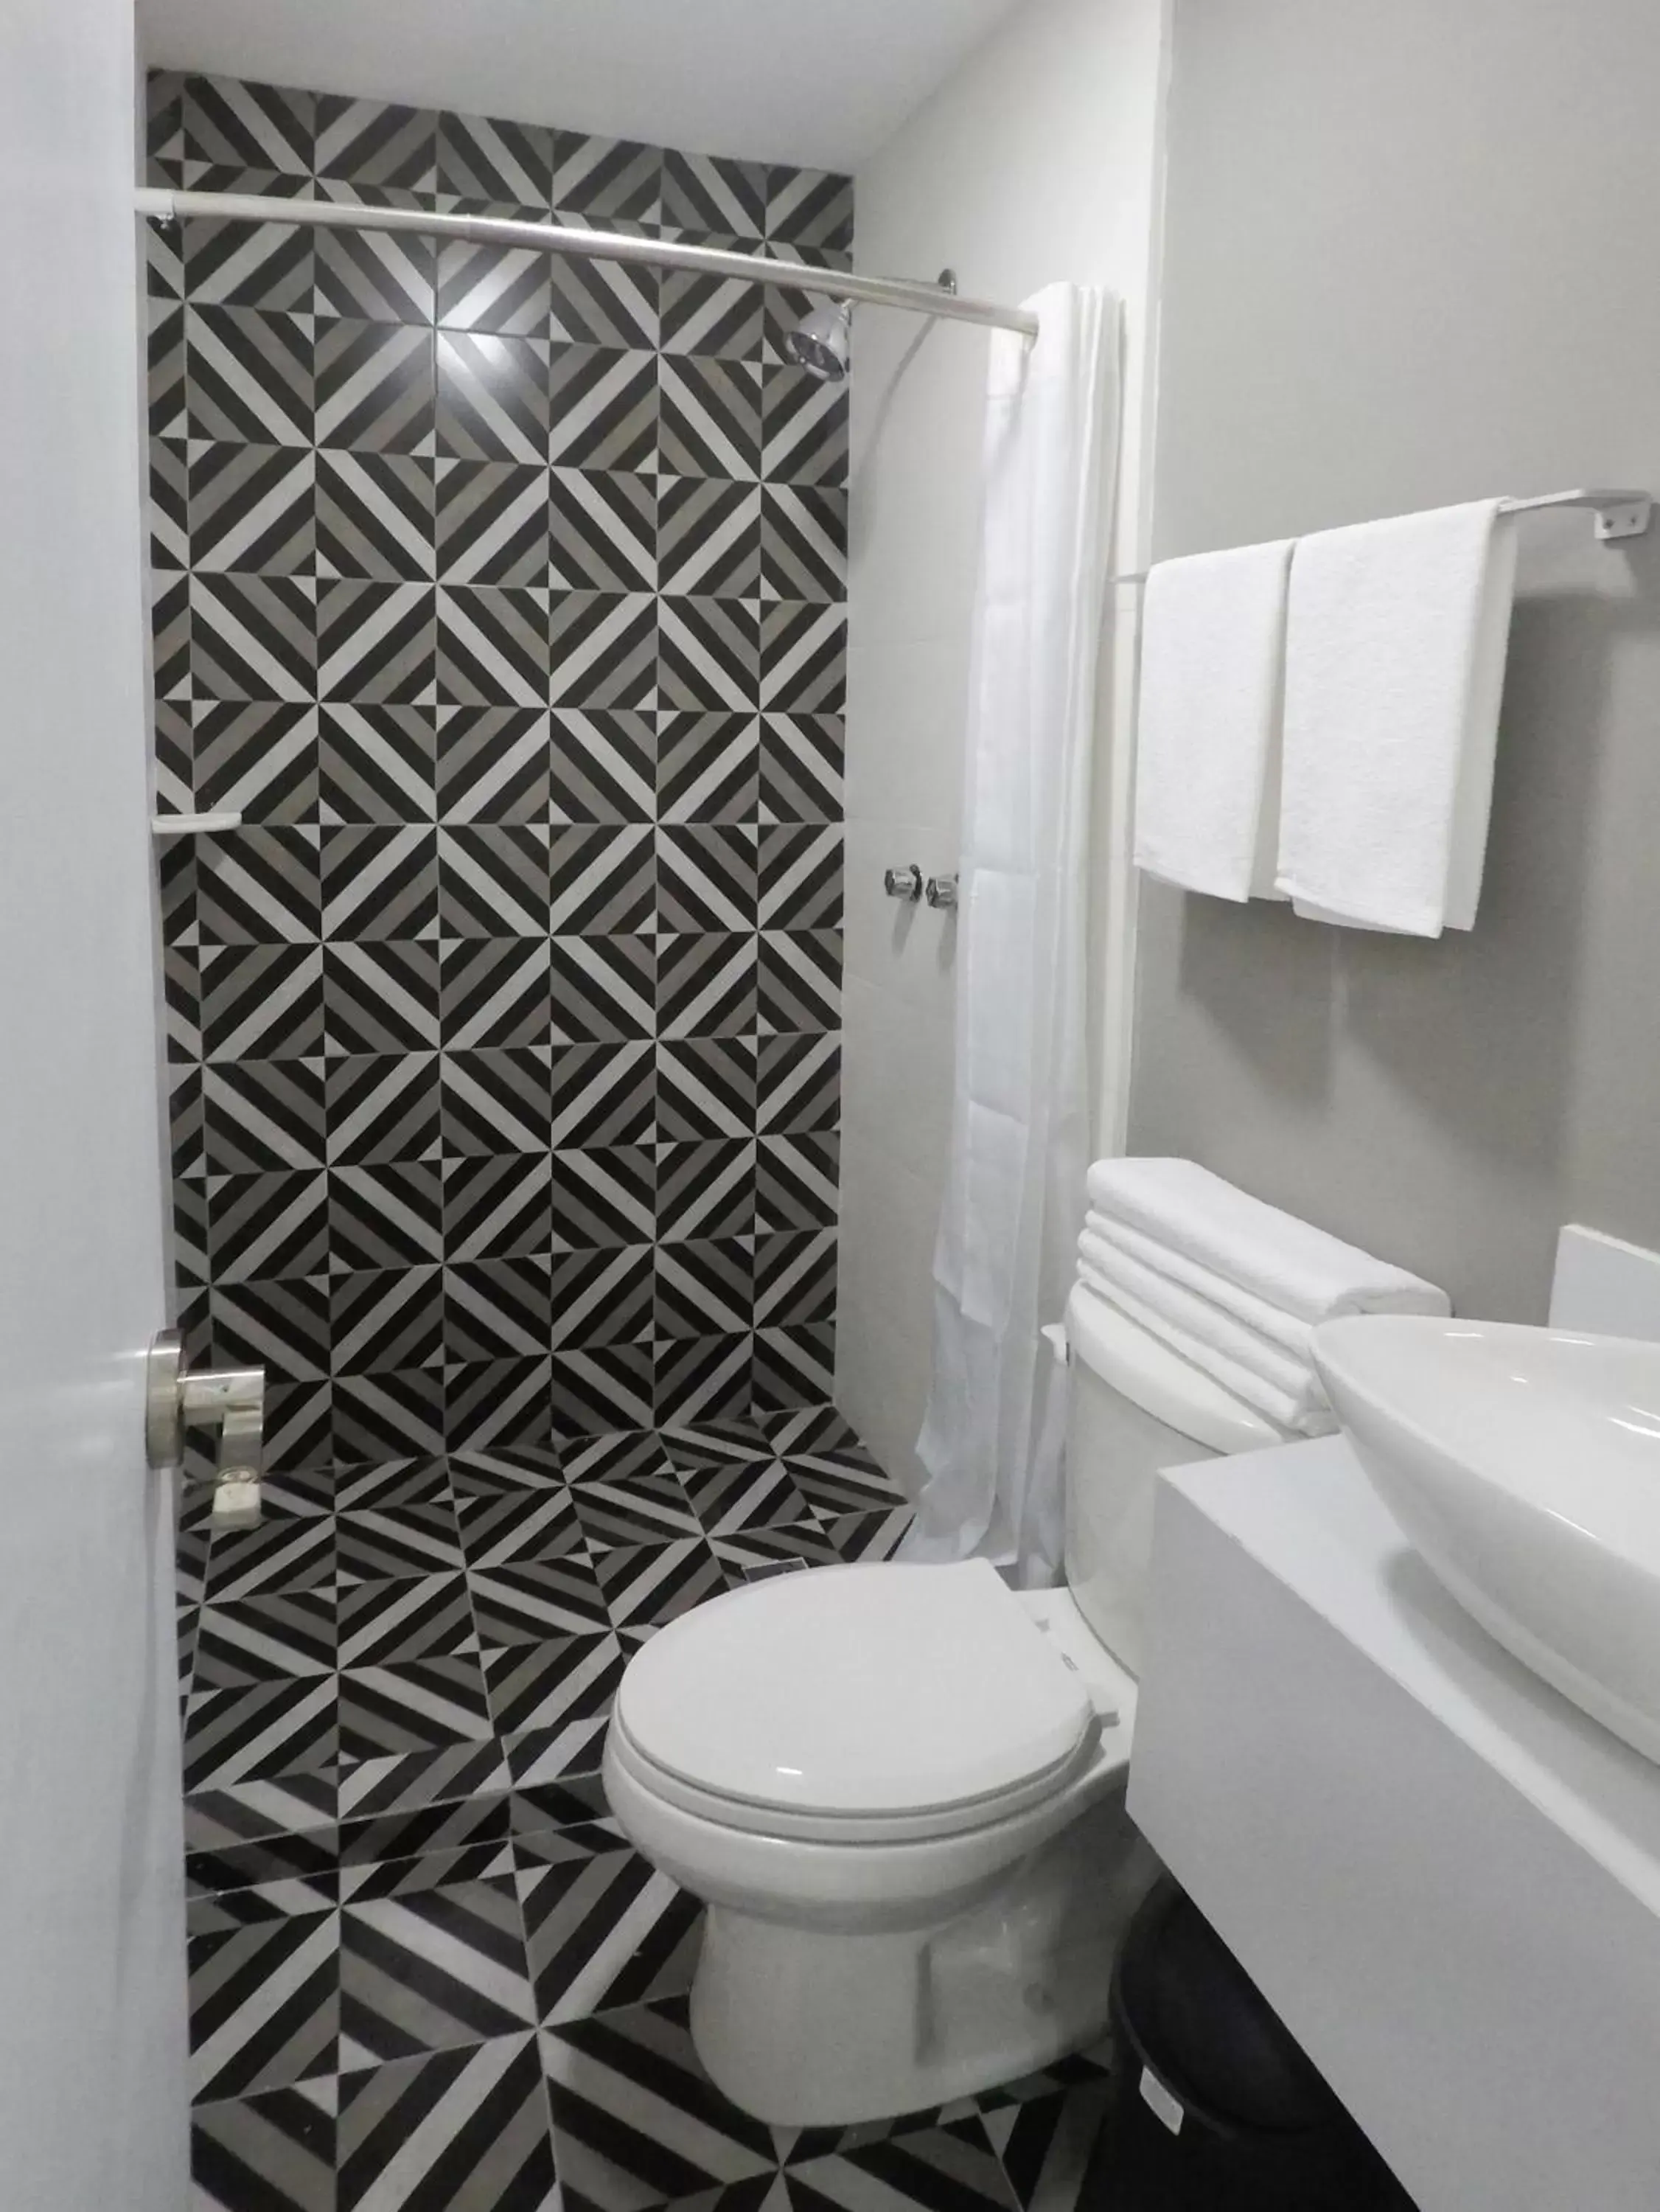 Bathroom in Casa moderna equipada como en pequeño hotel hab 4